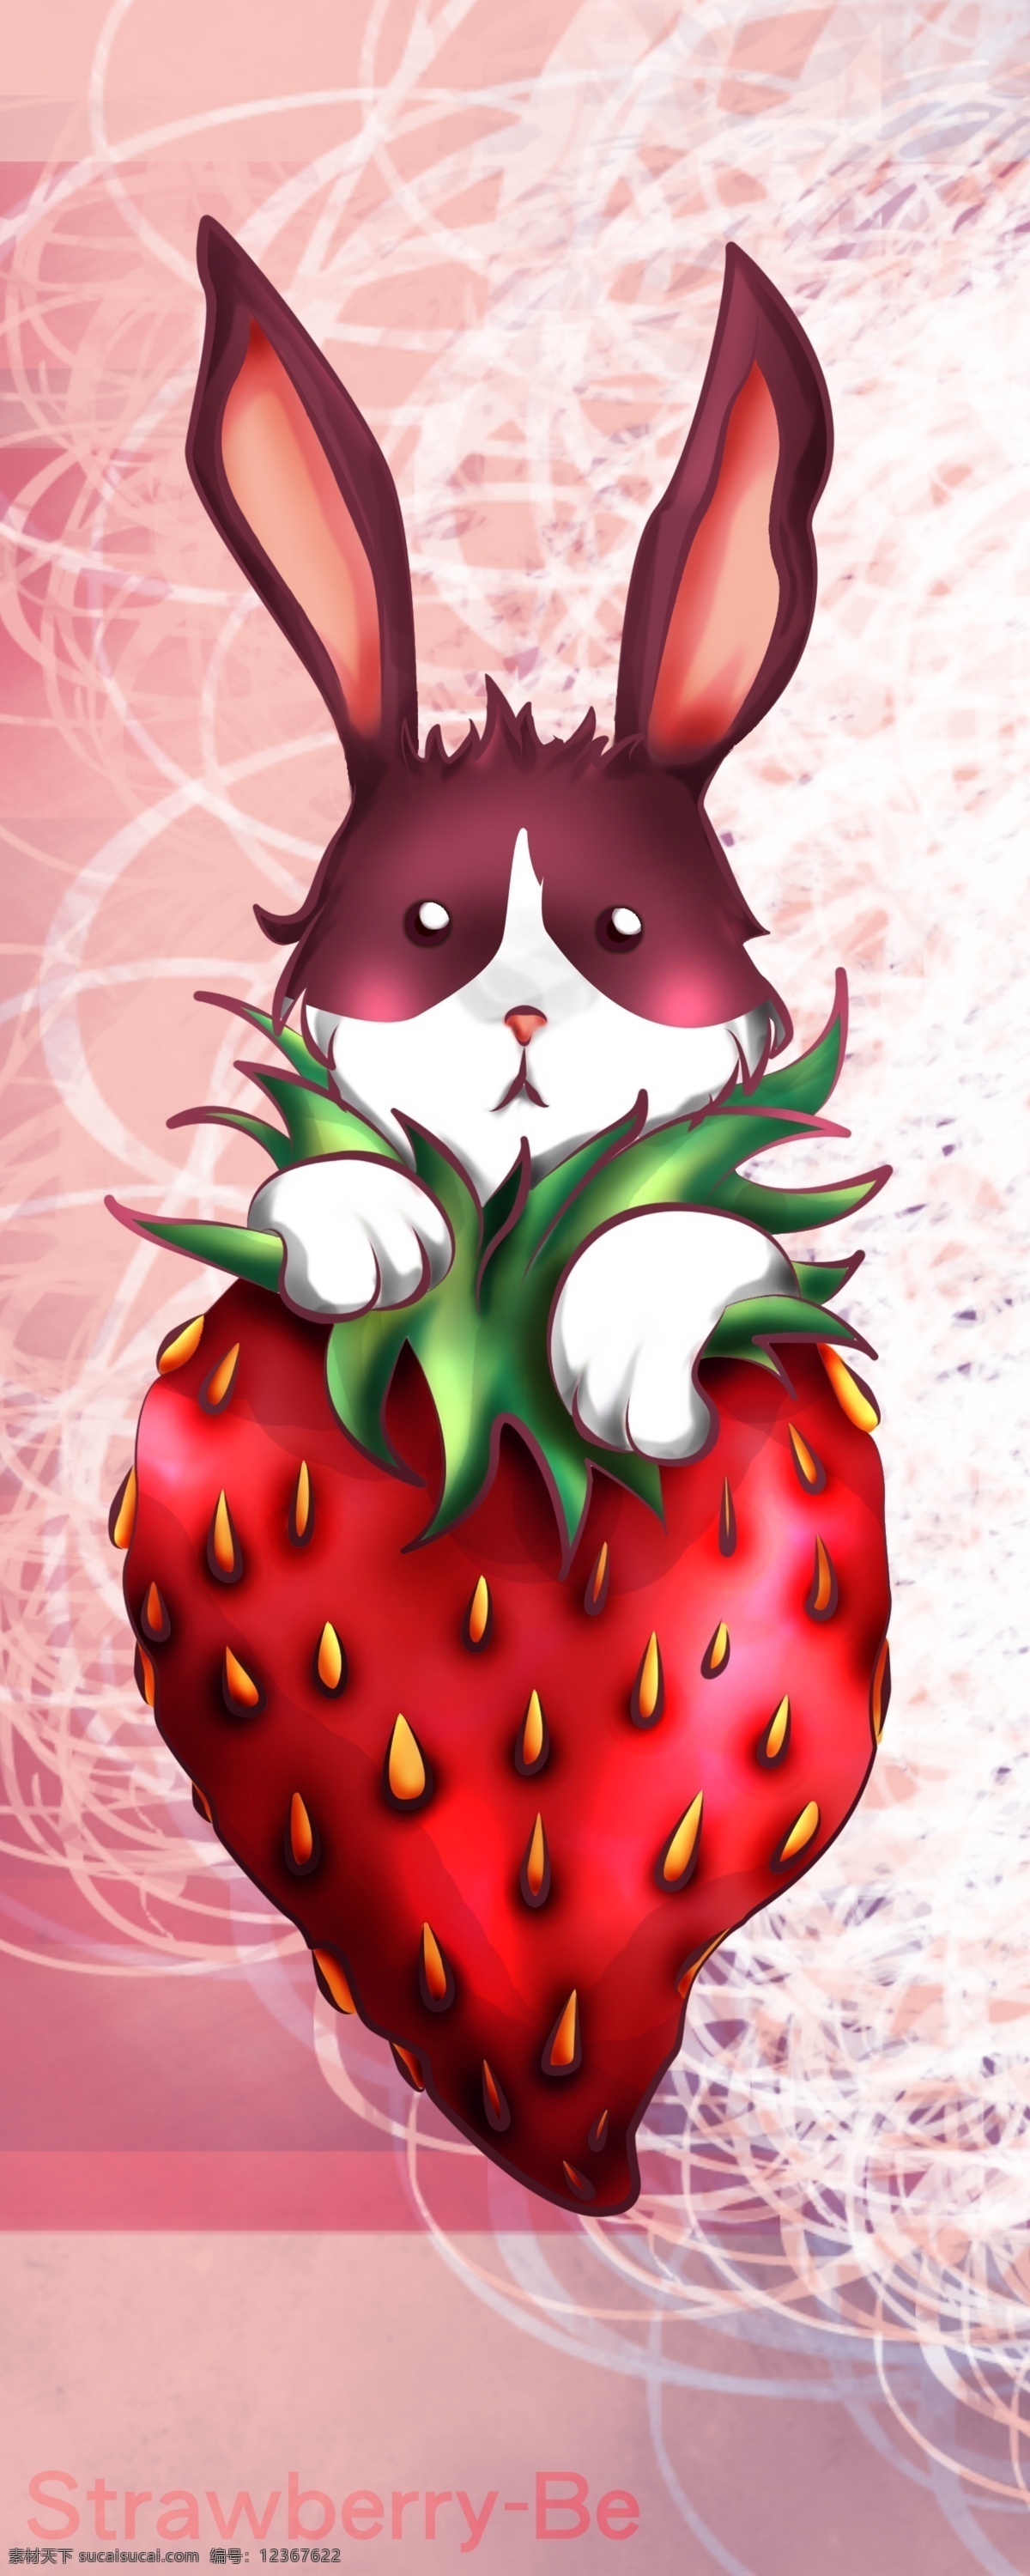 草莓兔子插畫 兔子 插畫 電腦 草莓 可愛 白色